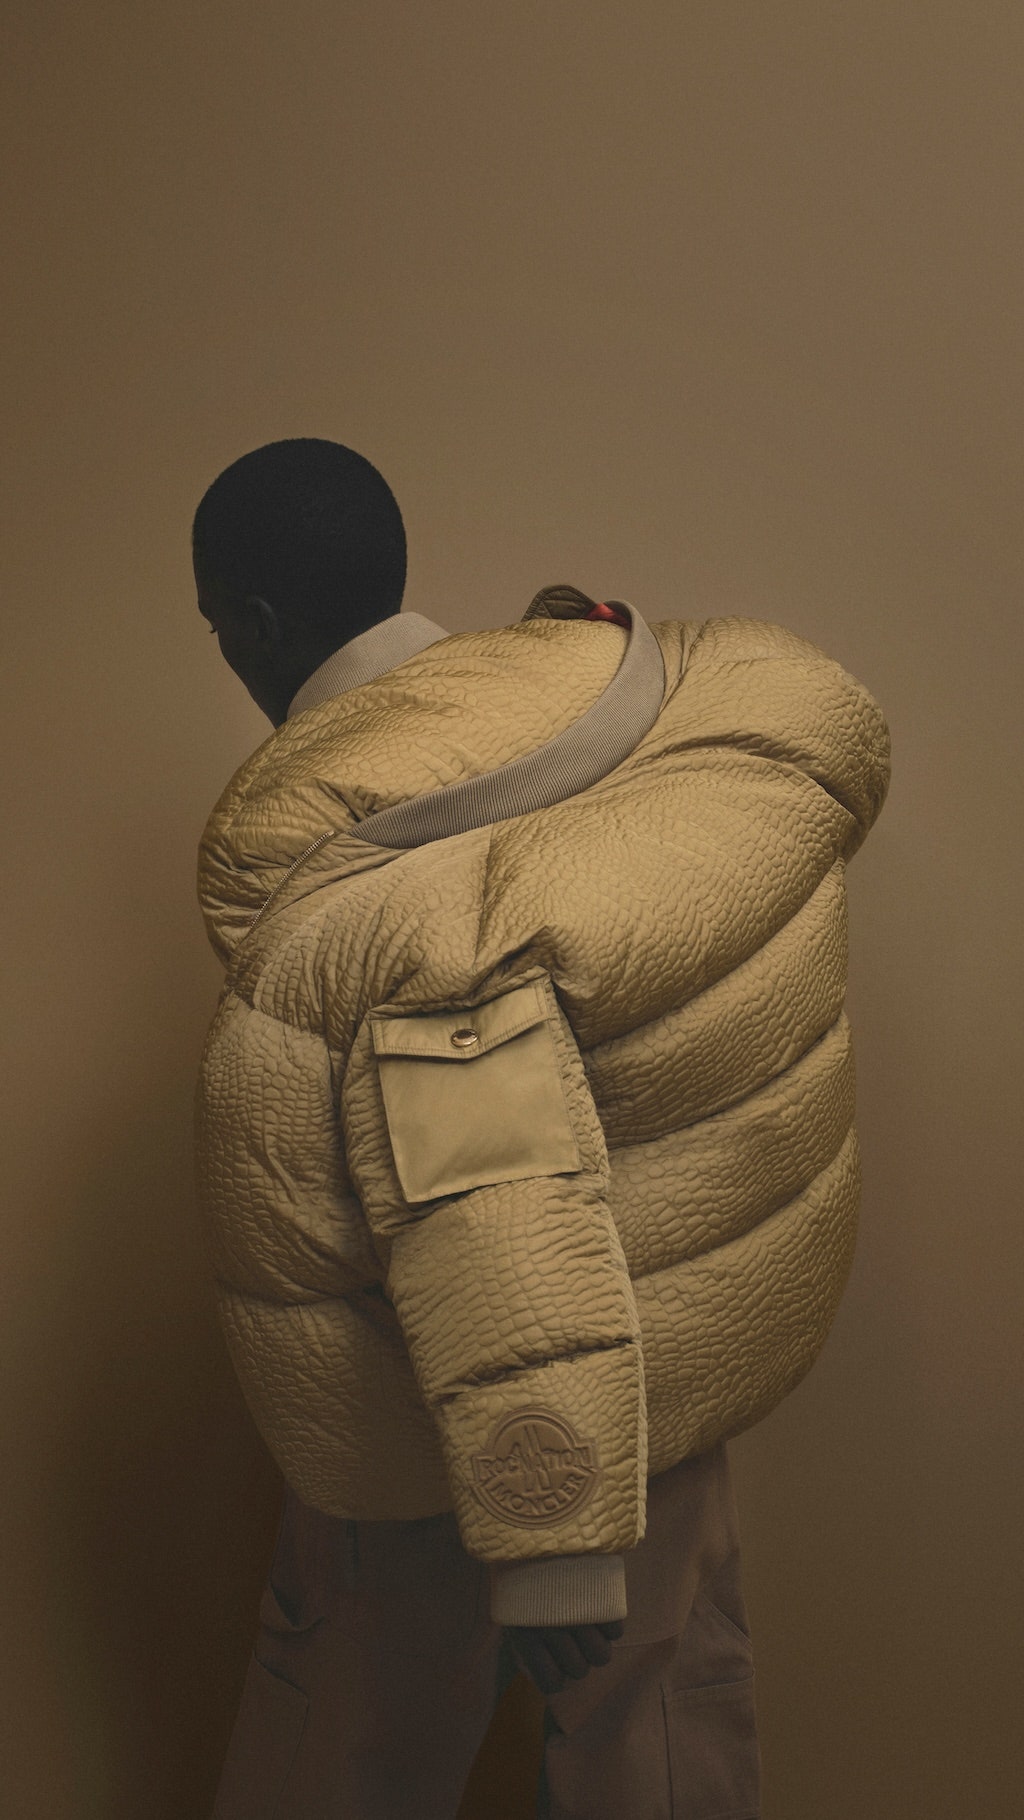 moncler y jay-z han diseñado la chaqueta bomber puffer más estilosa del invierno (y hasta han hecho una minifilm)